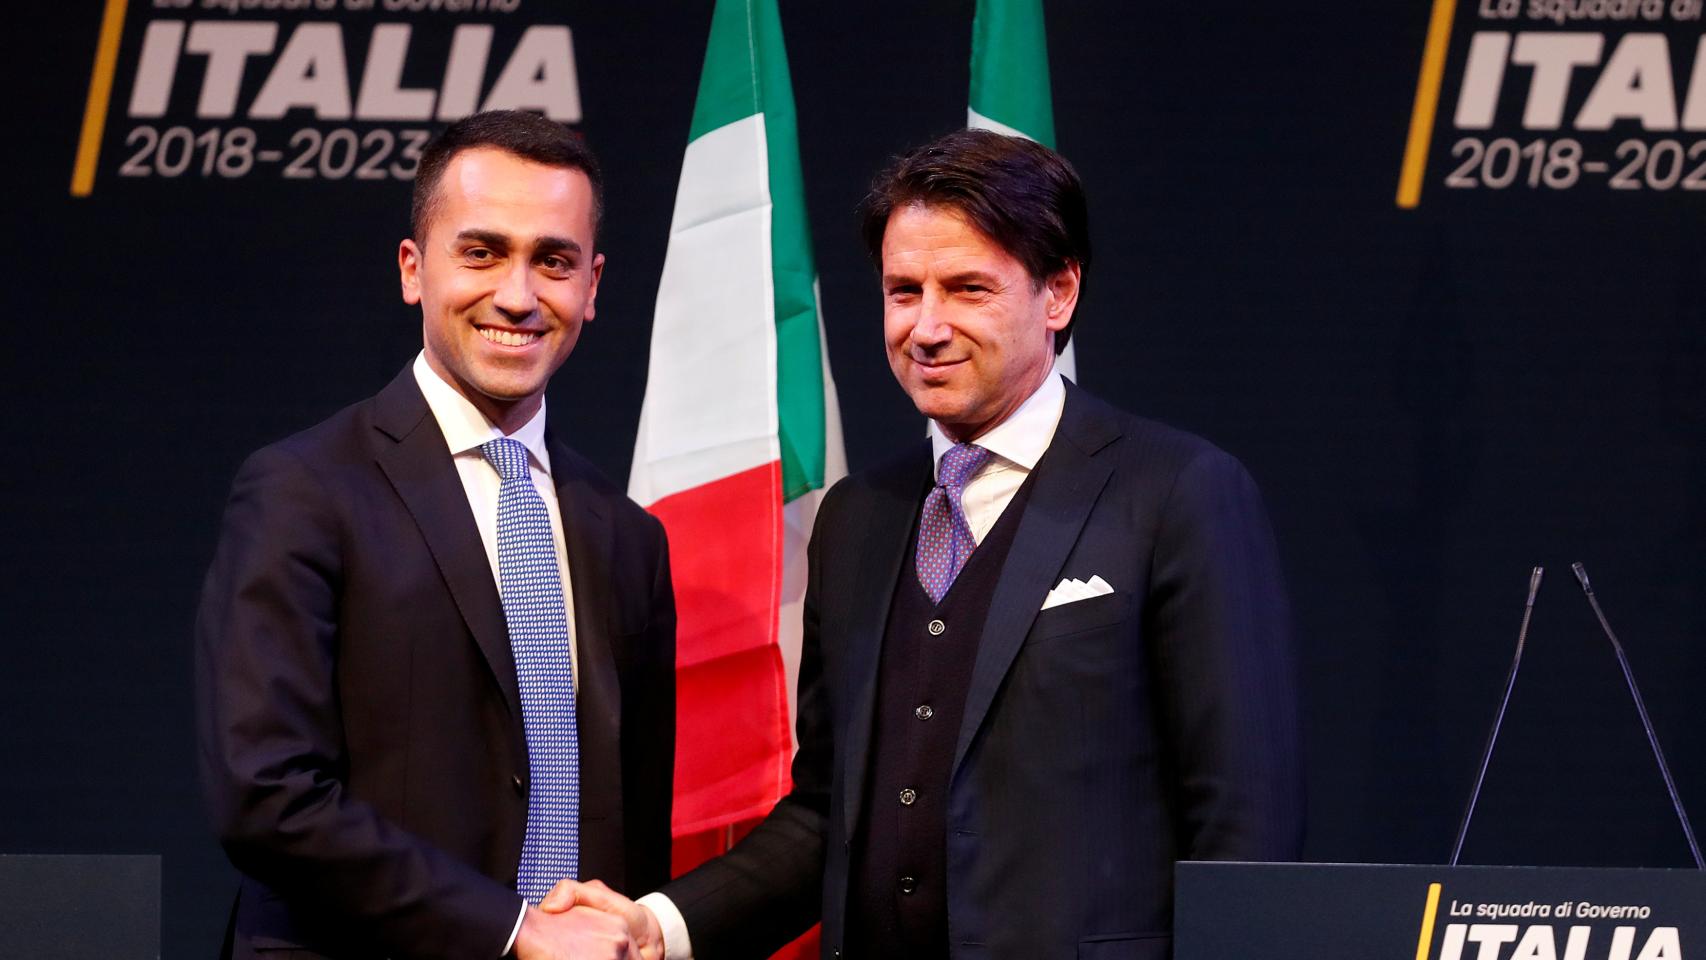 Luigi di Maio y Giuseppe Conte, durante la campaña electoral.